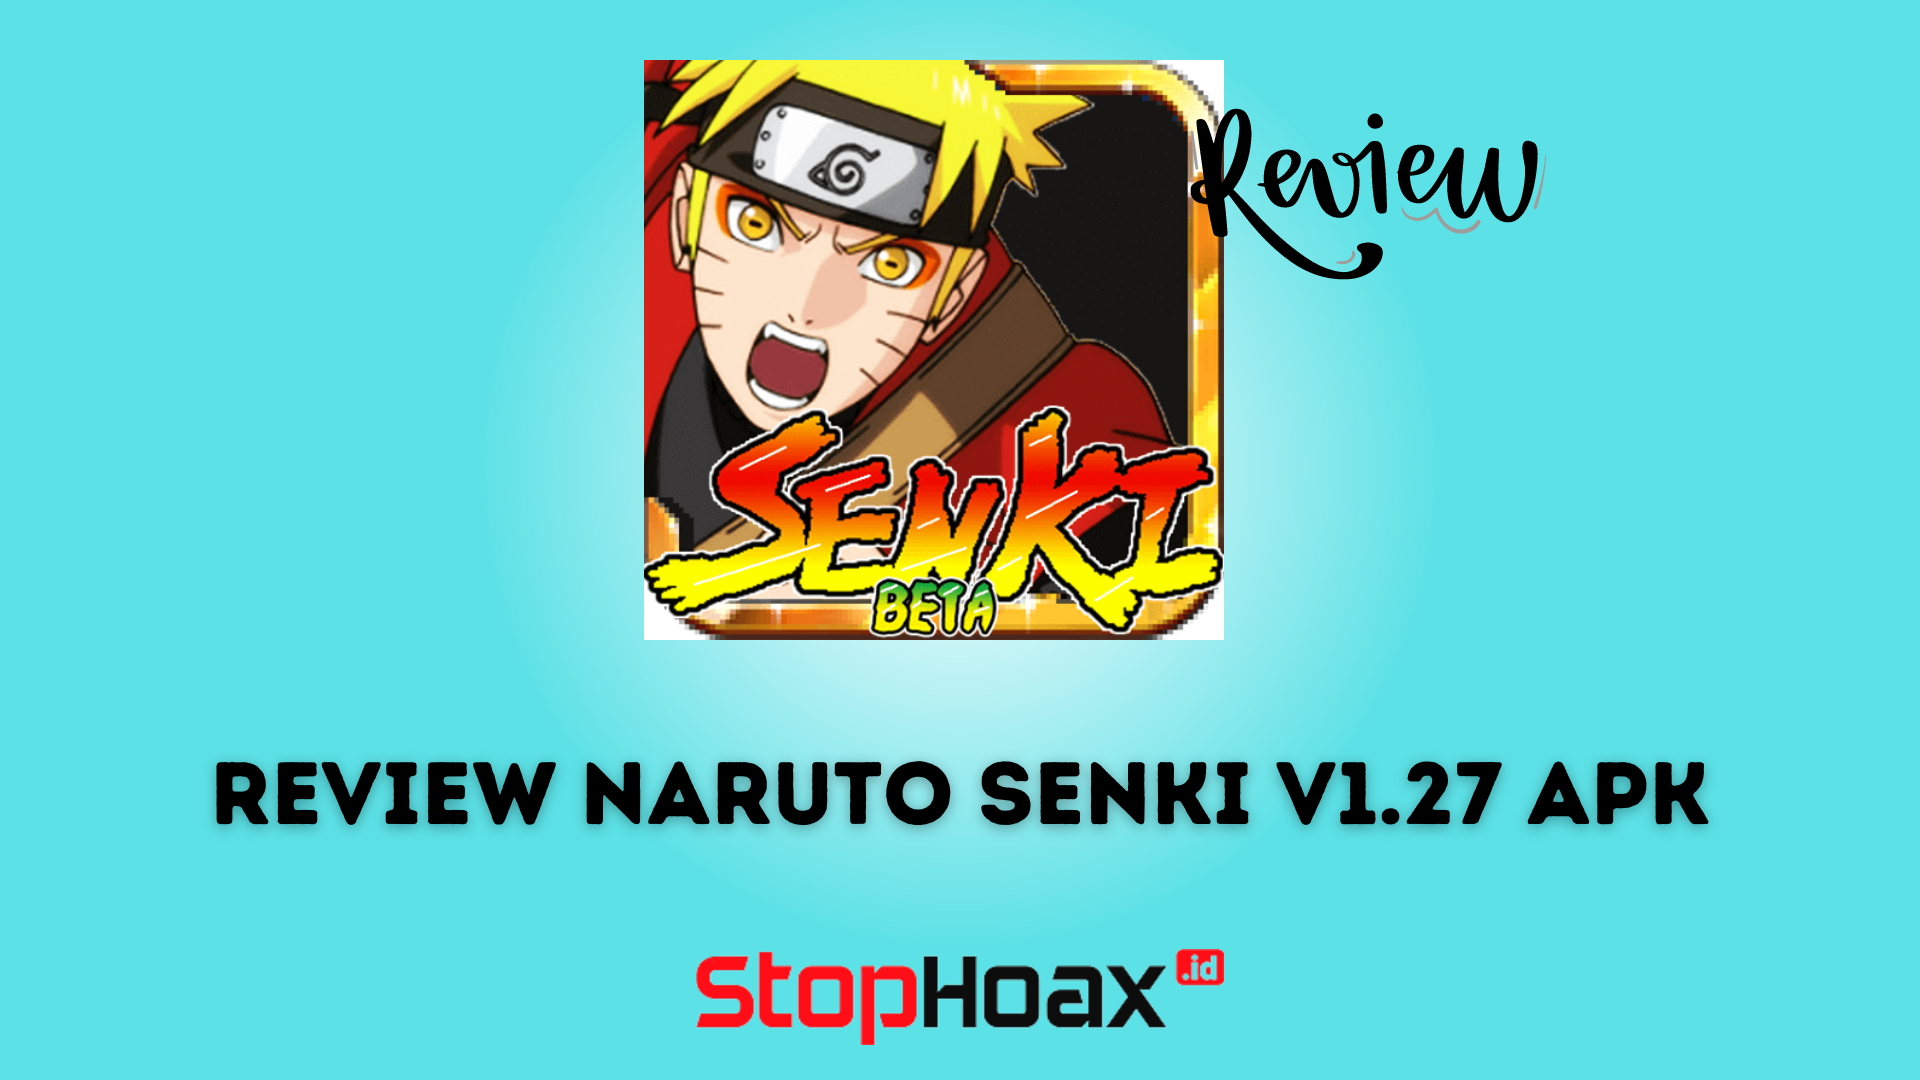 Review Naruto Senki v1.27 APK Apakah Game Ini Layak untuk Dimainkan